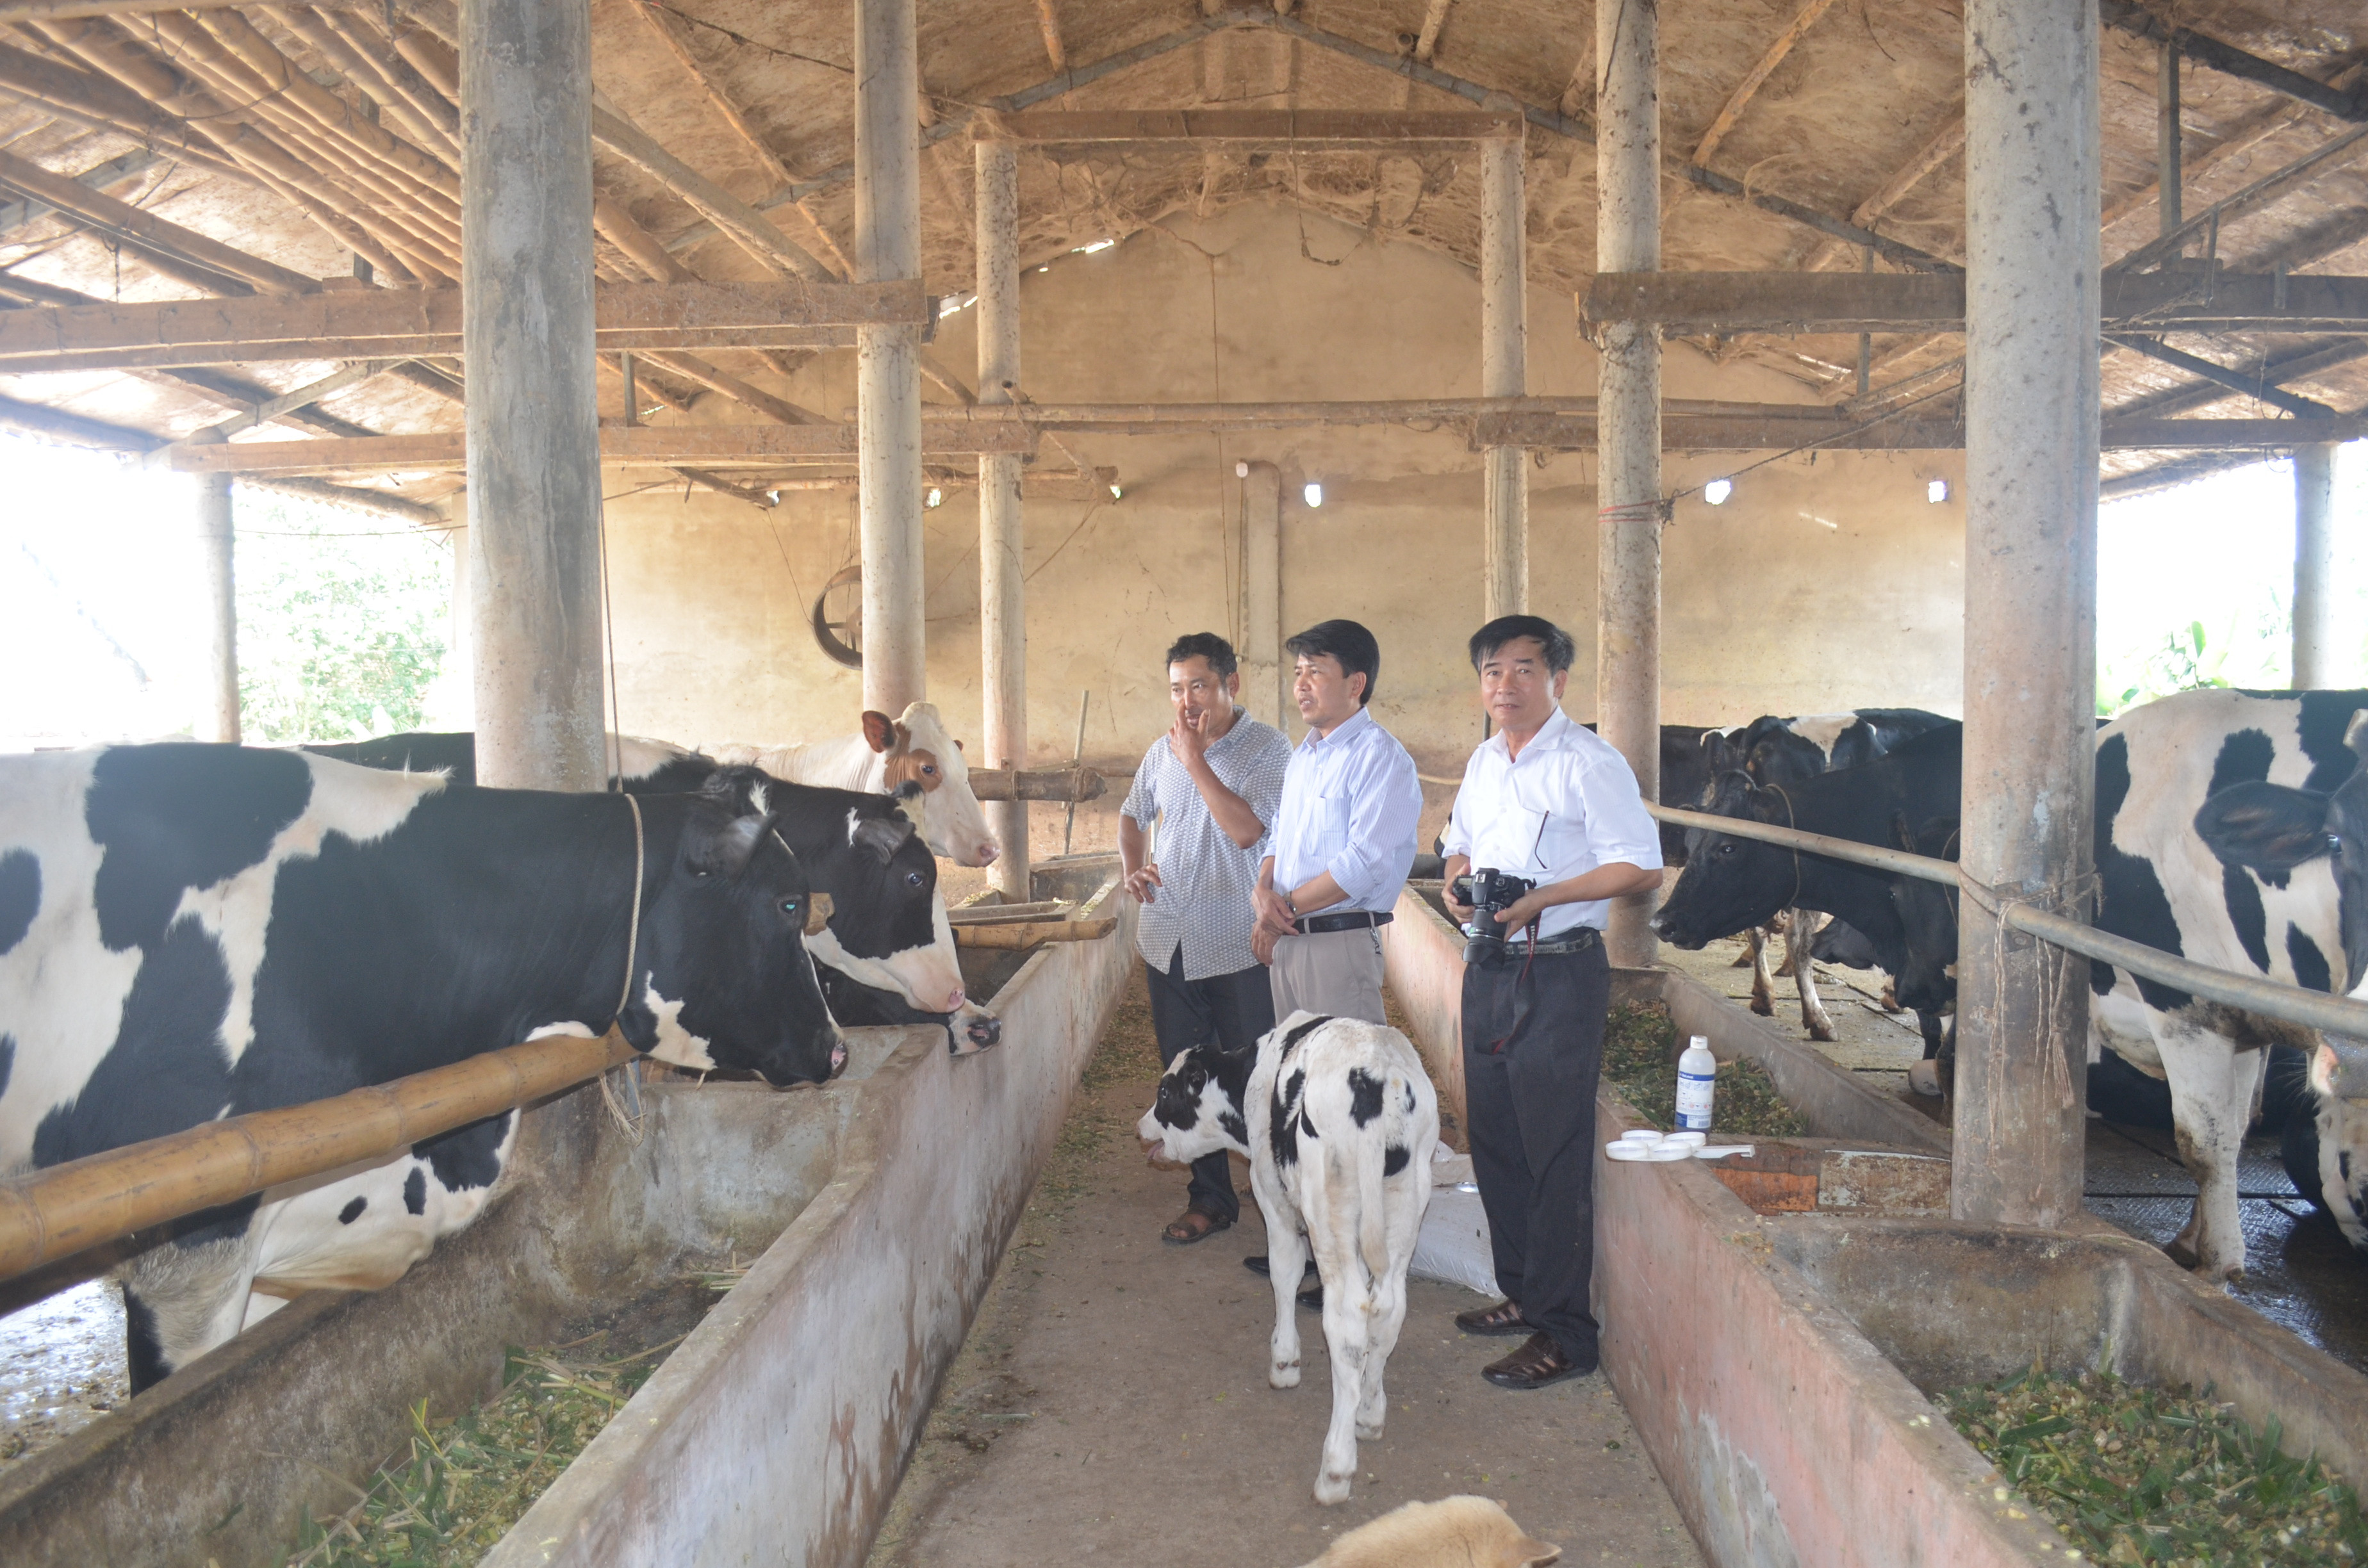 Trang trại nuôi bò sữa của một hộ gia đình ở huyện Tân Kỳ. Ảnh: Nhật Lân.